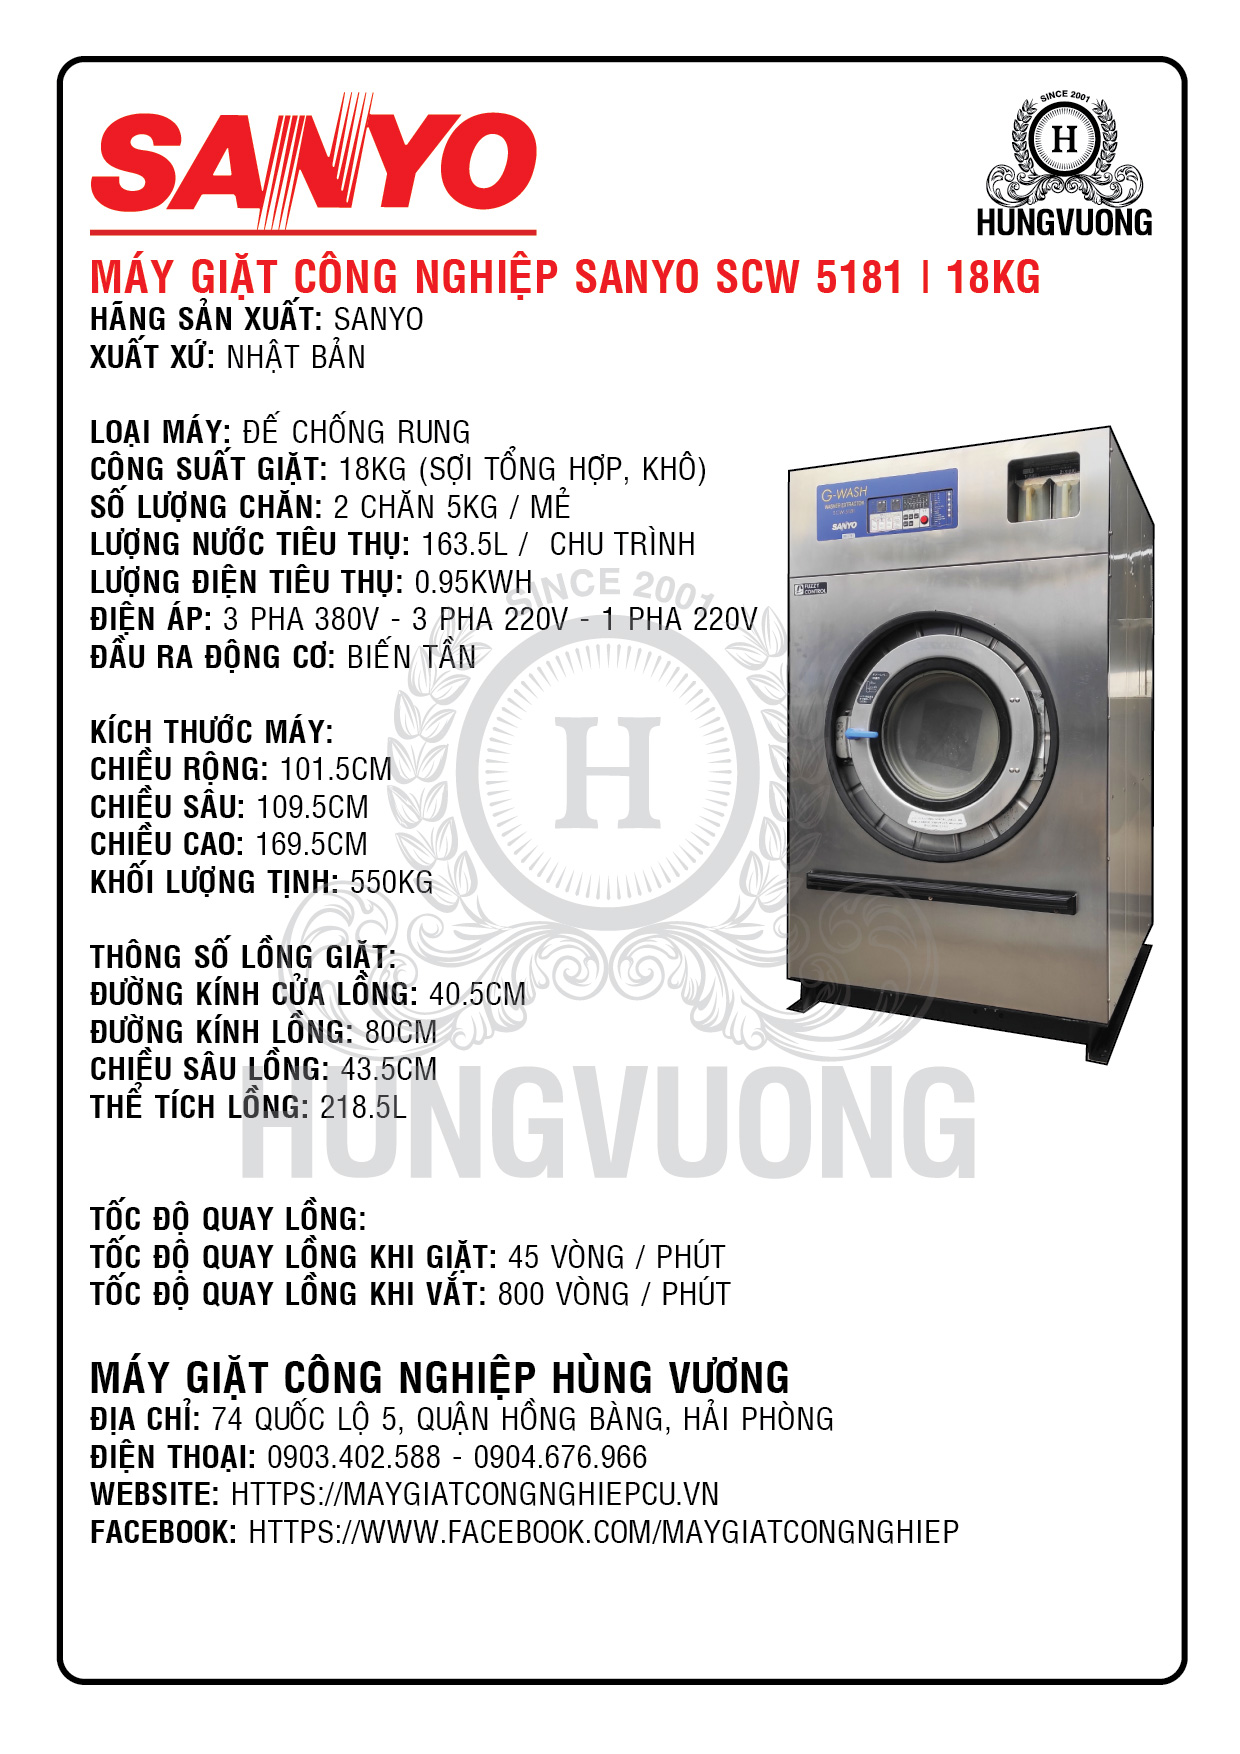 Thông số kỹ thuật máy giặt công nghiệp SANYO SCW 5181, 18kg, chân chống rung, biến tần, Nhật Bản